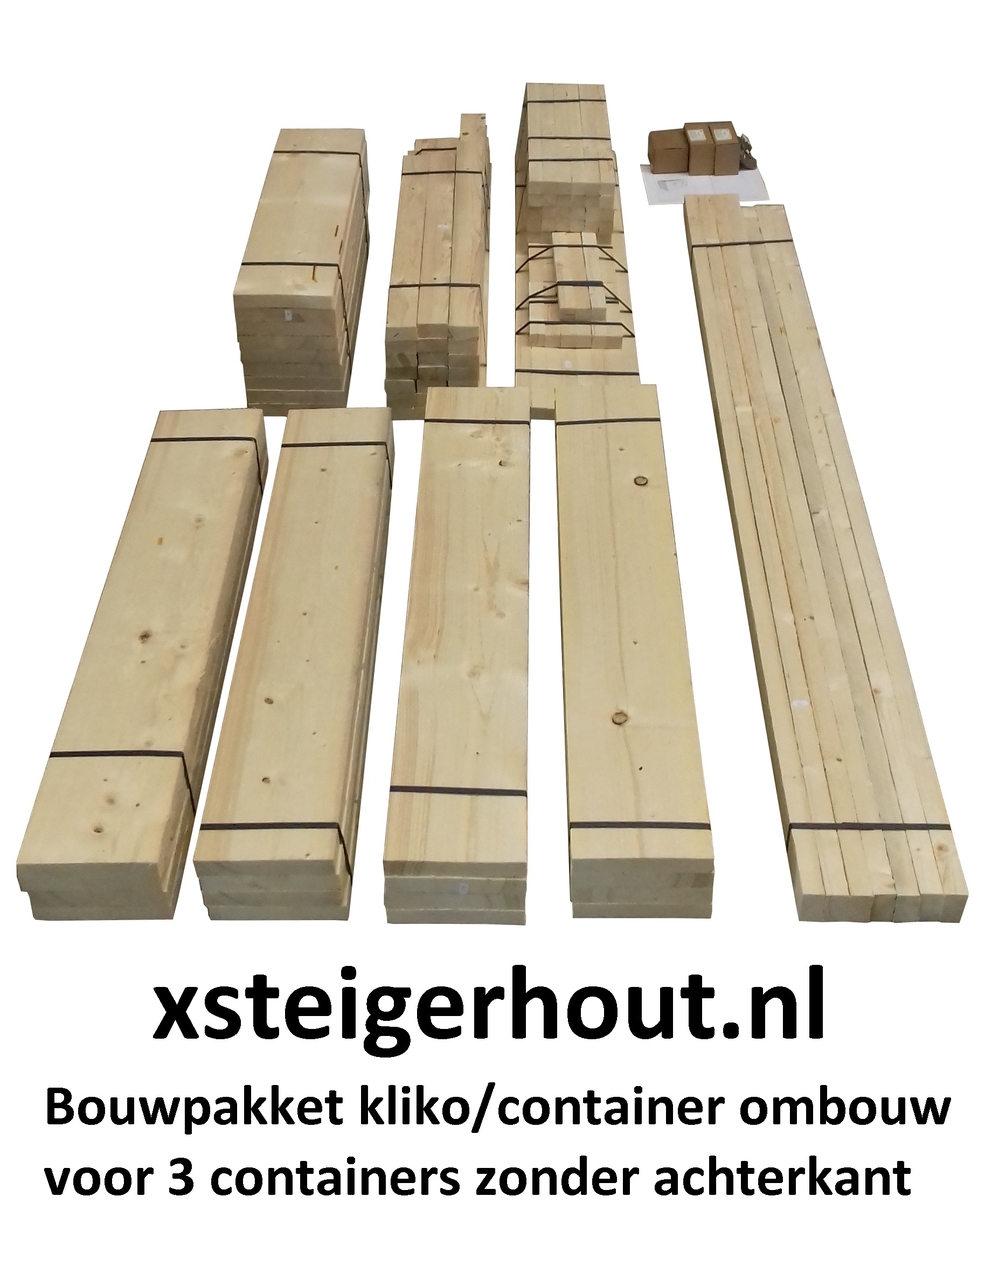 Uitgelezene Kliko ombouw - container ombouw - xsteigerhout NL-05